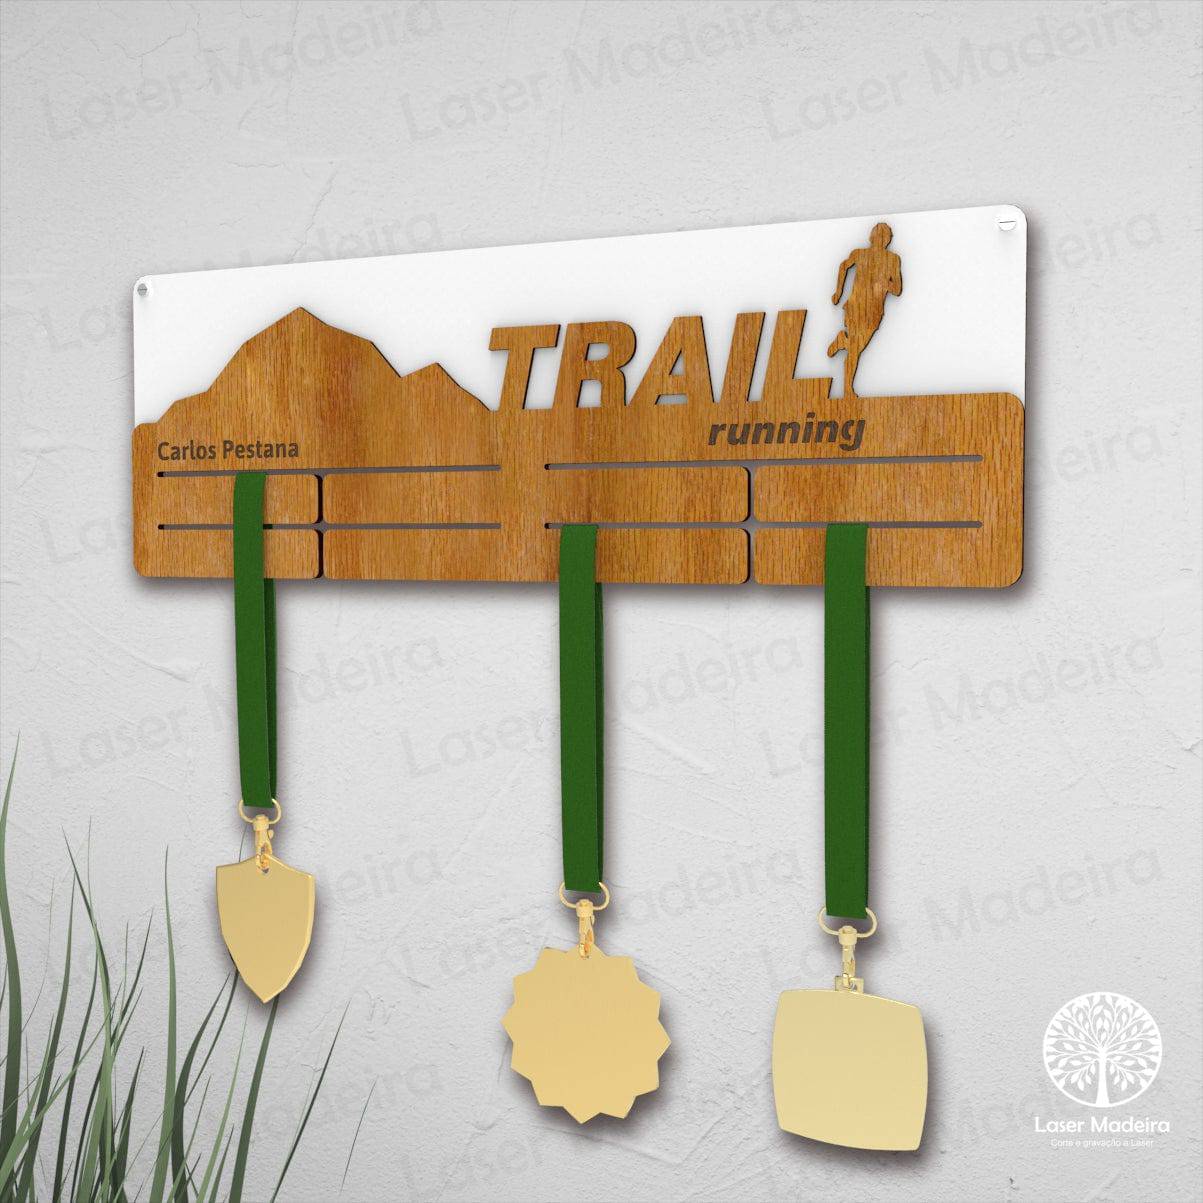 Placa Porta Medalhas - Trail Running - Laser Madeira